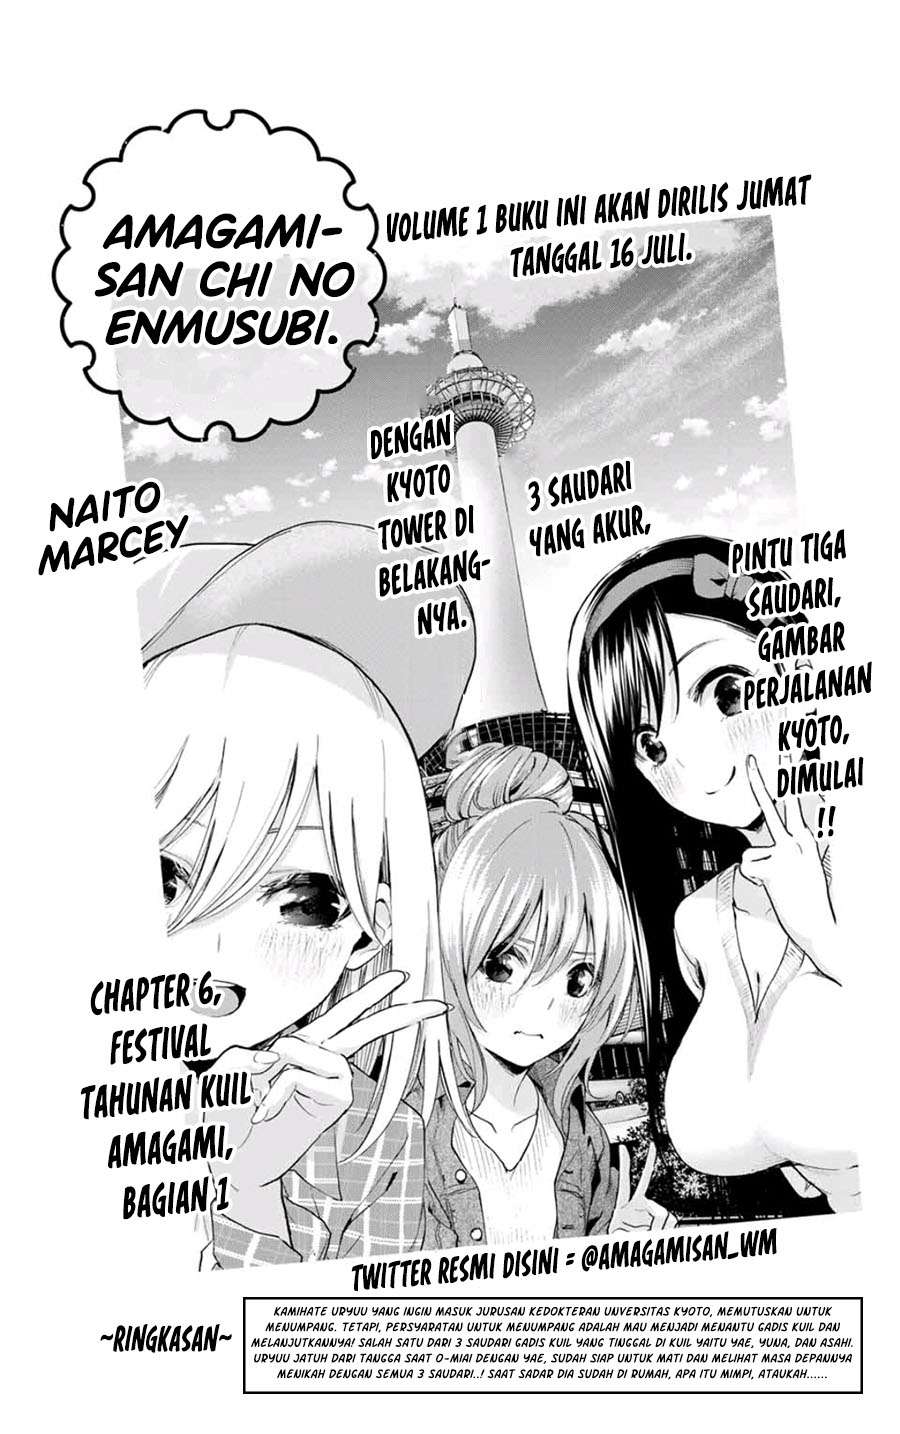 Amagami-san Chi no Enmusubi Chapter 6